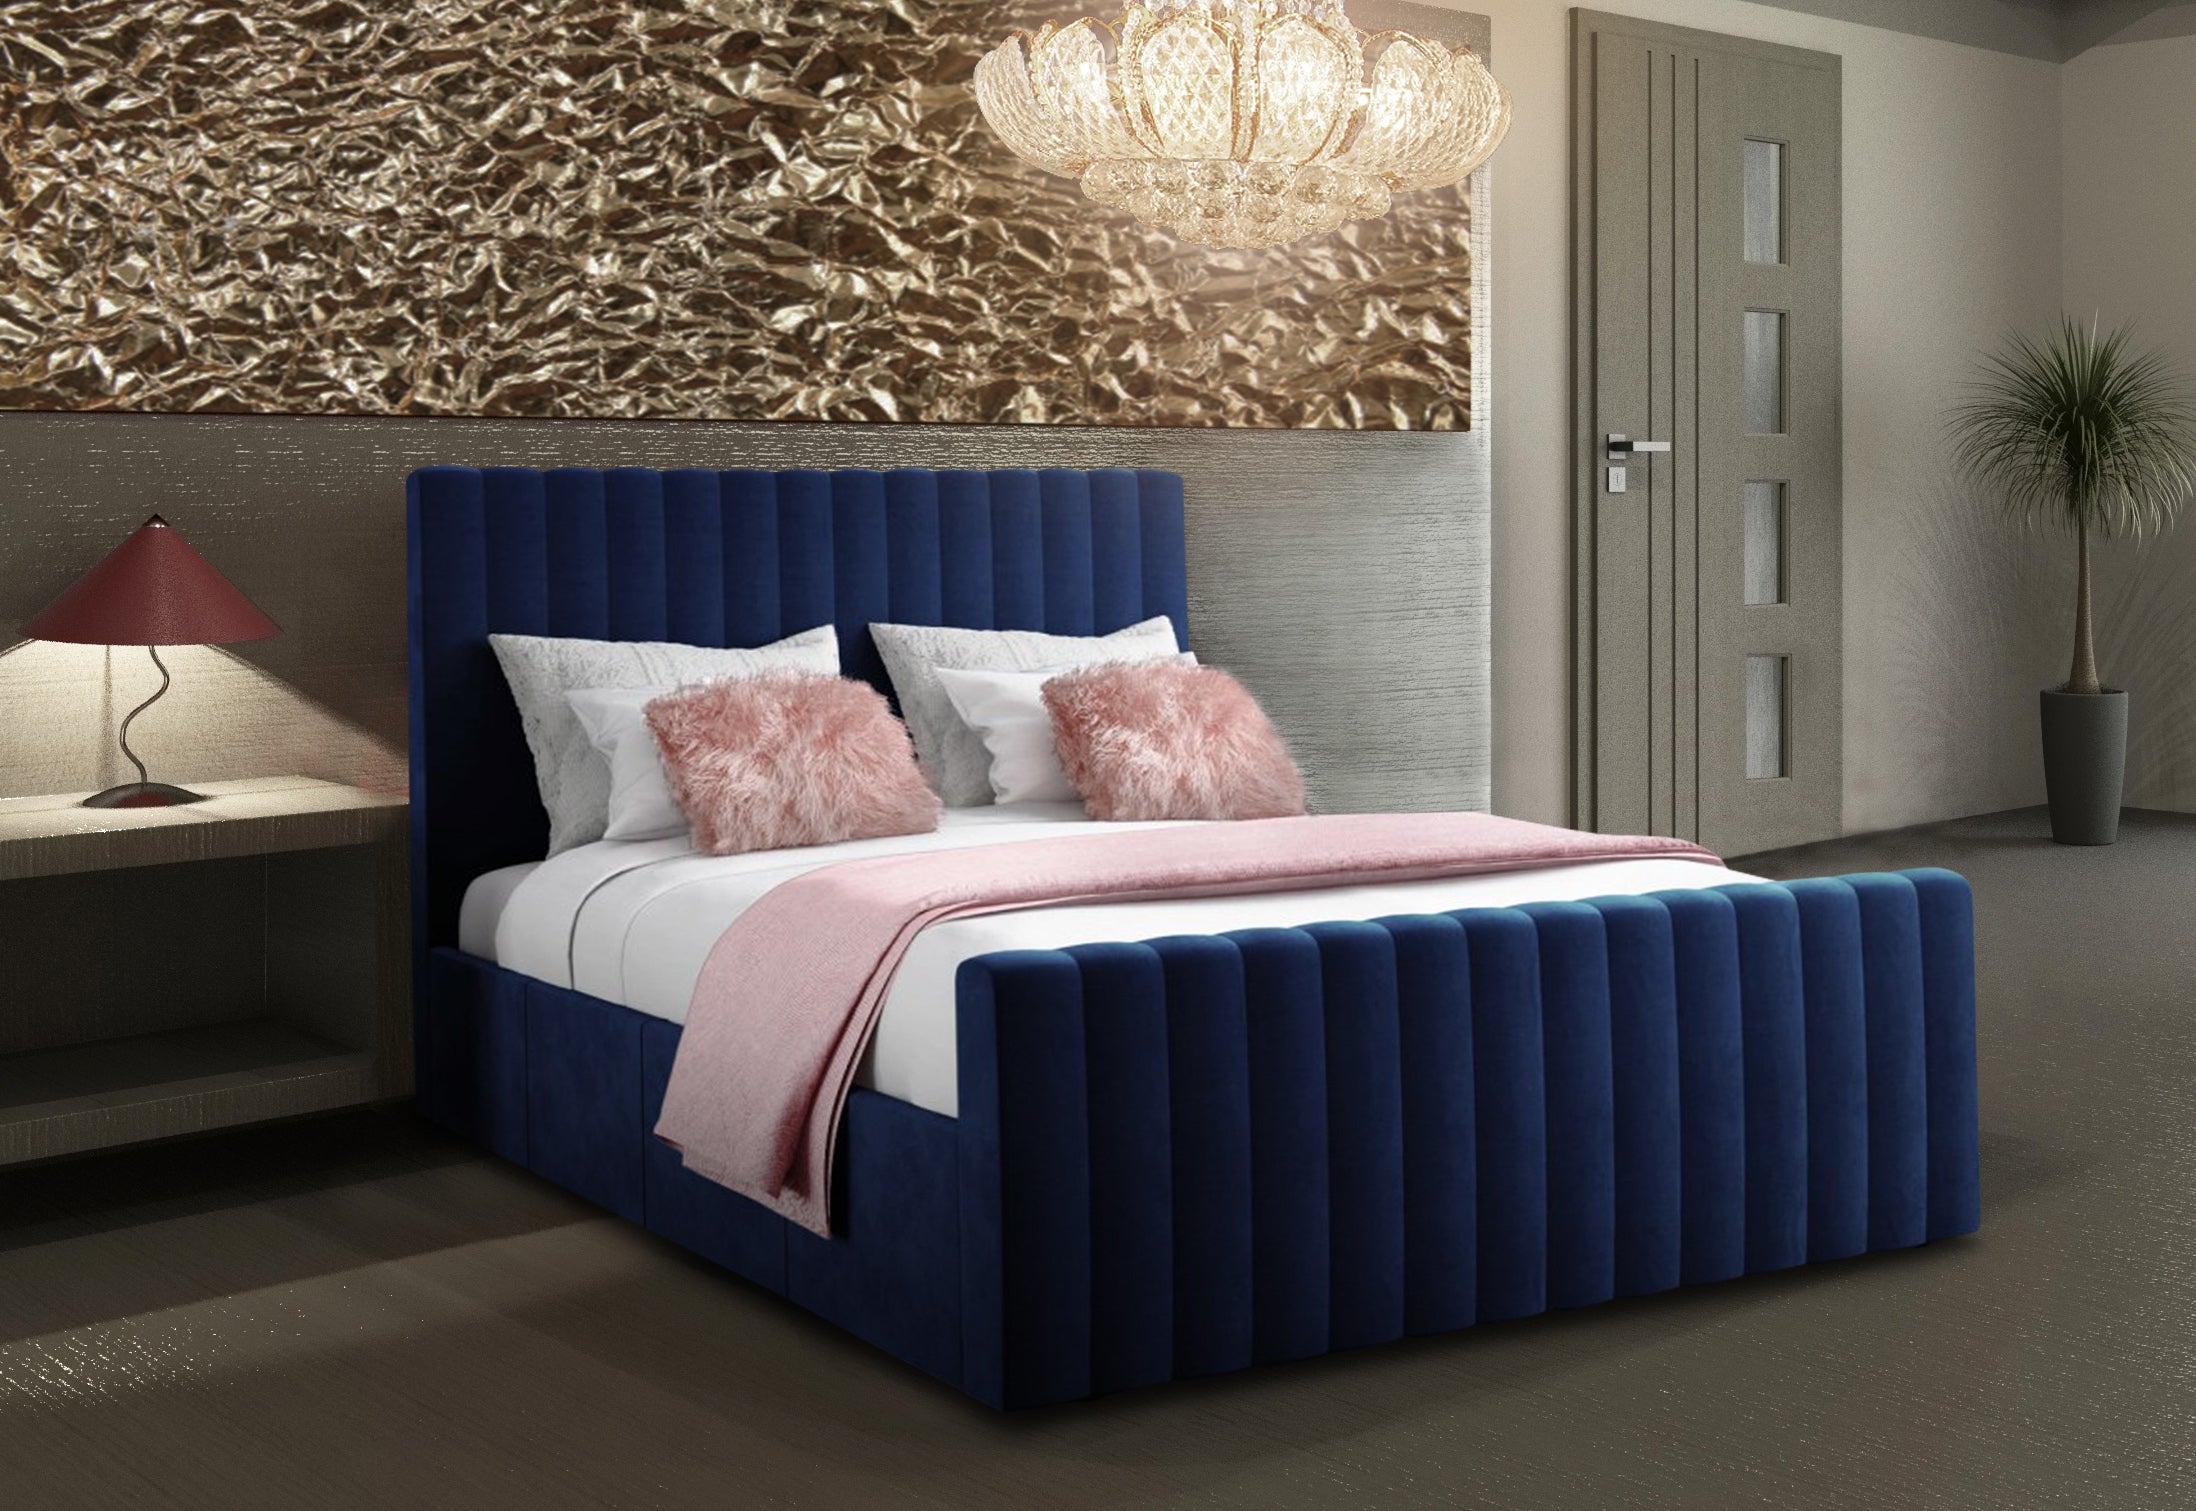 The Bespoke Sadie Bed- Fully Customisable with Storage Options- Velvet Monaco Range